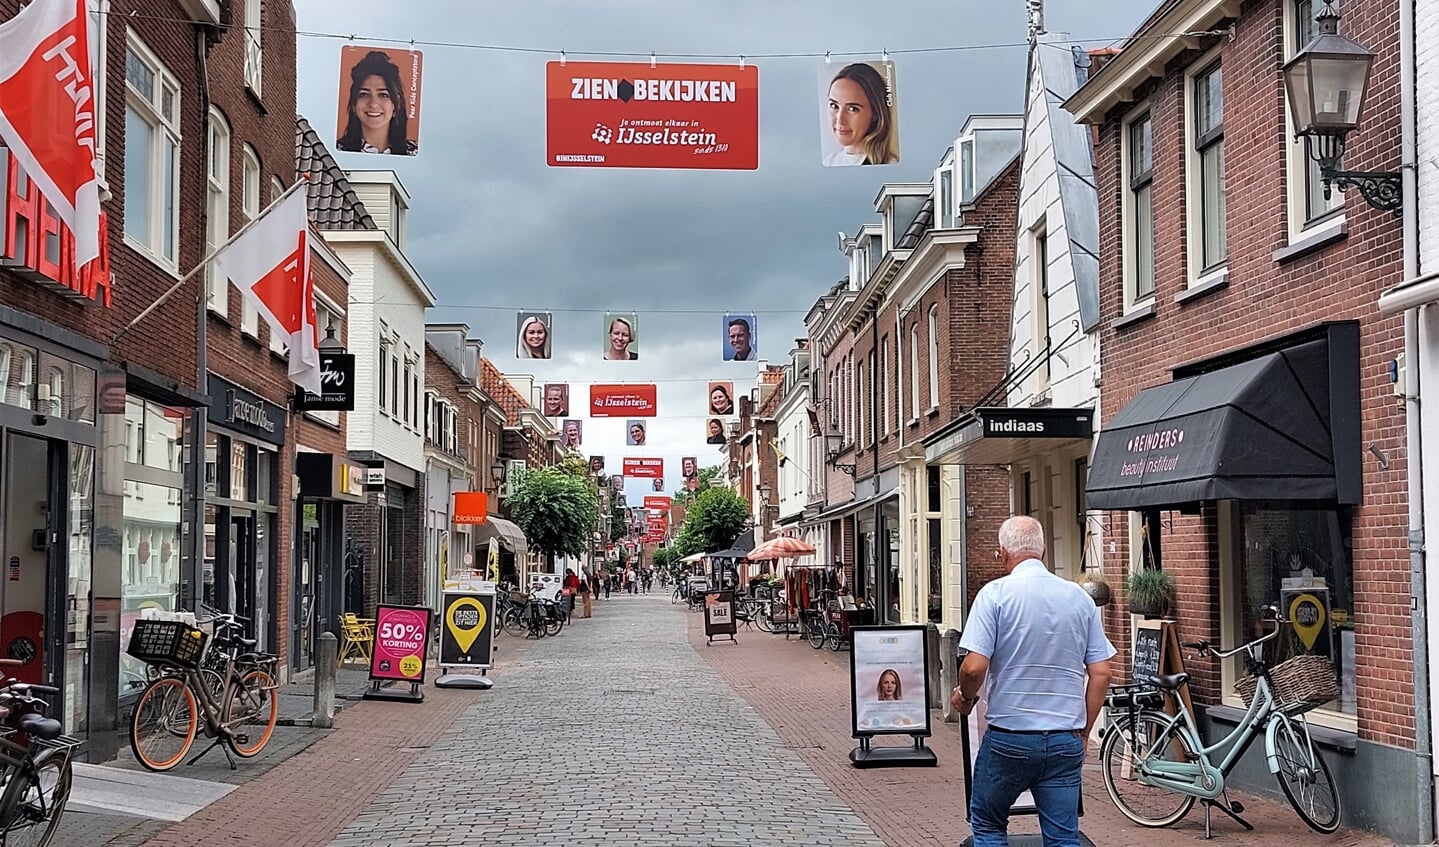 • Portretten in de binnenstad van bekende en minder bekende IJsselsteiners.